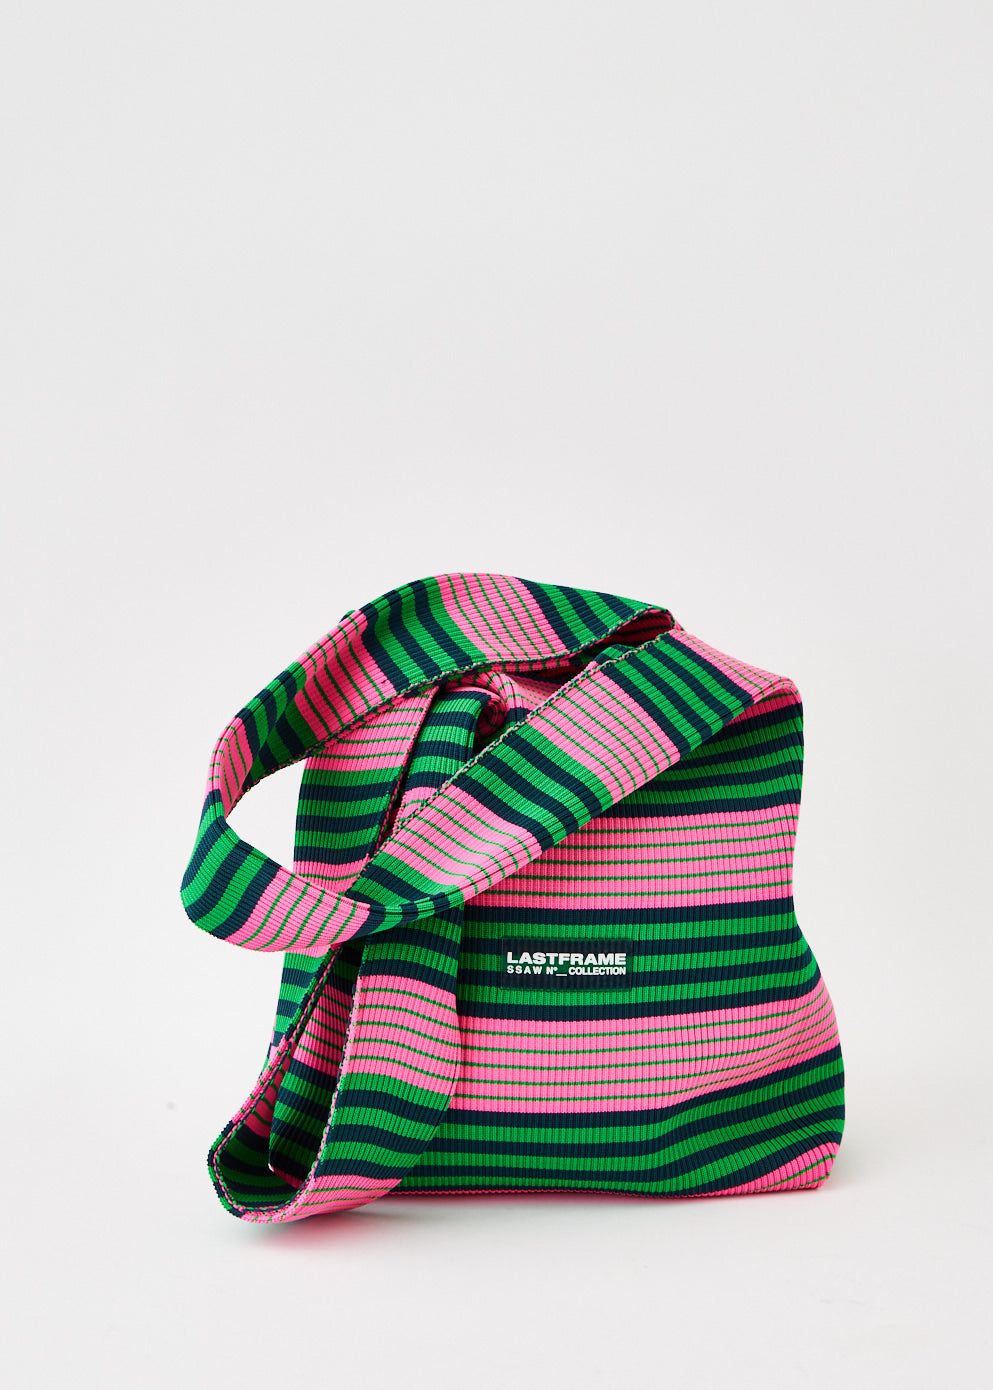 Medium Multicolour Stripe Market Bag